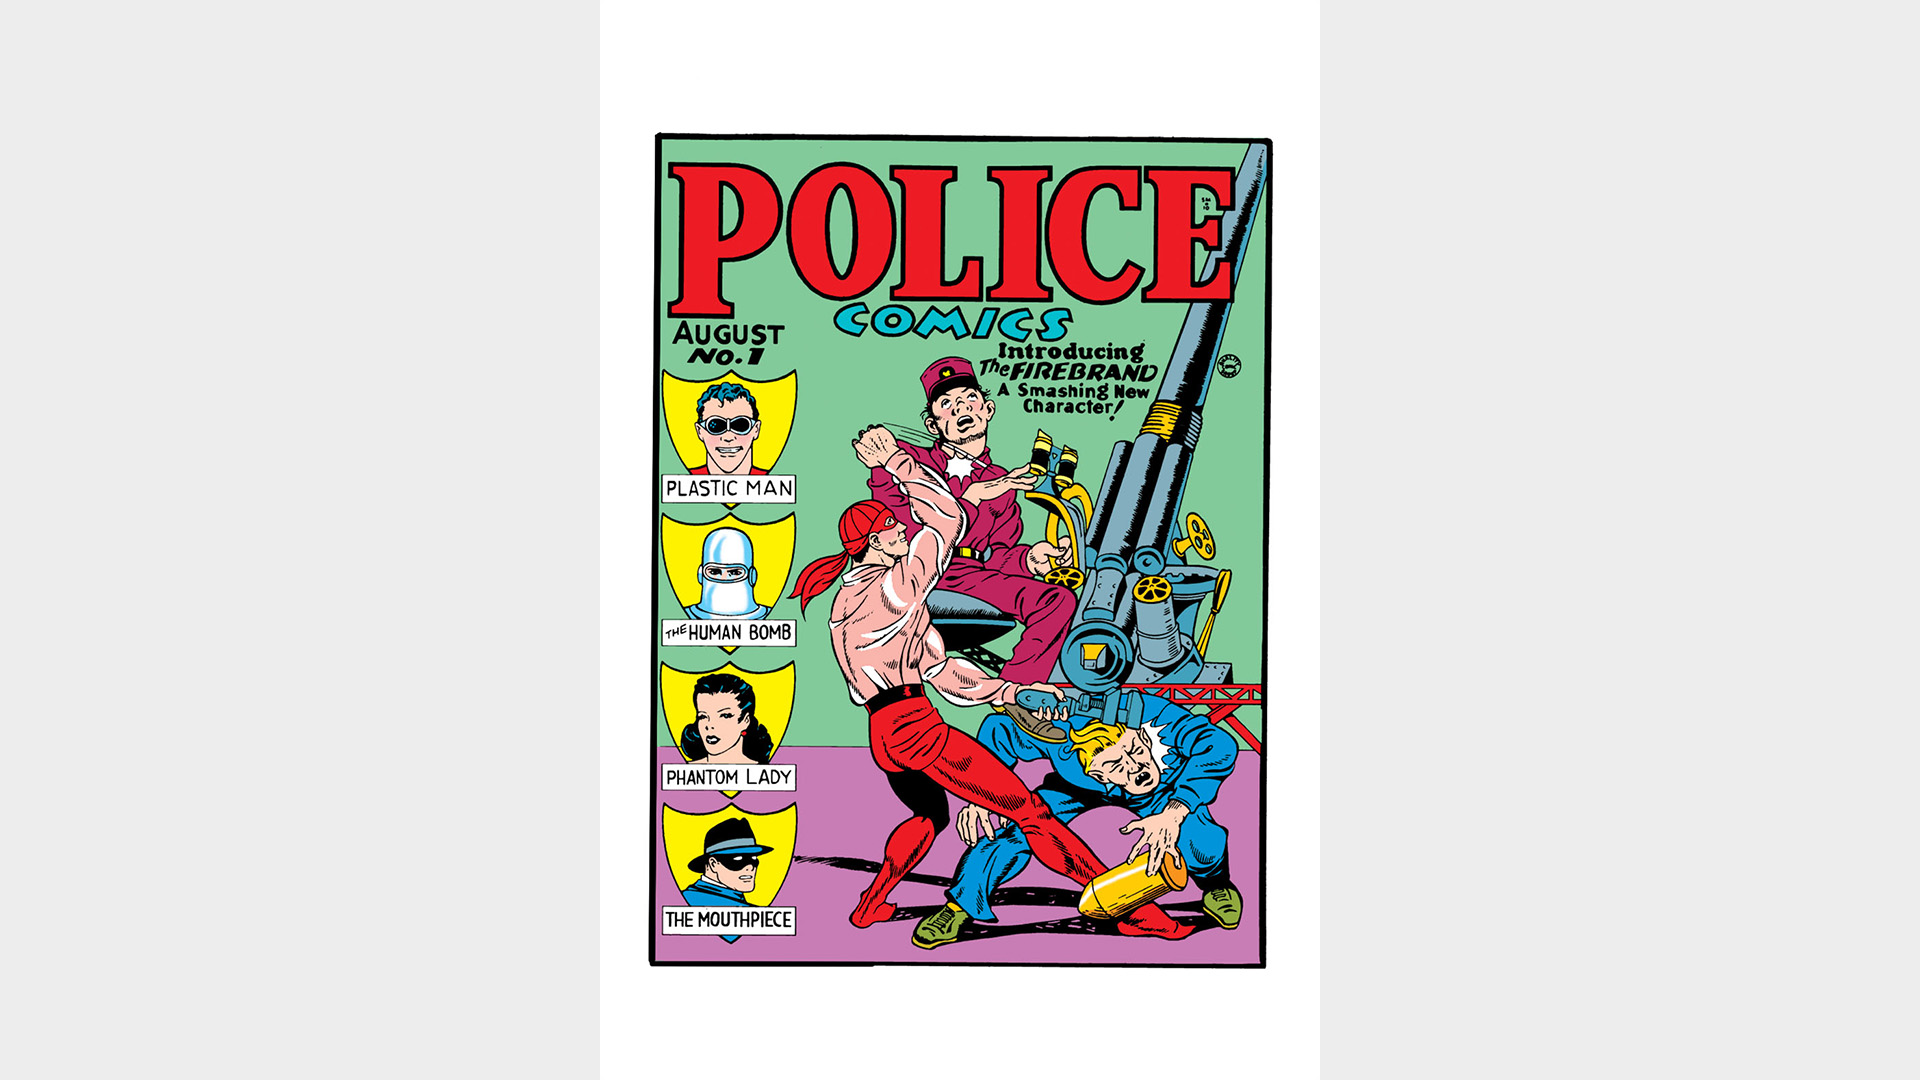 POLICE COMICS #1 FACSIMILE EDITION